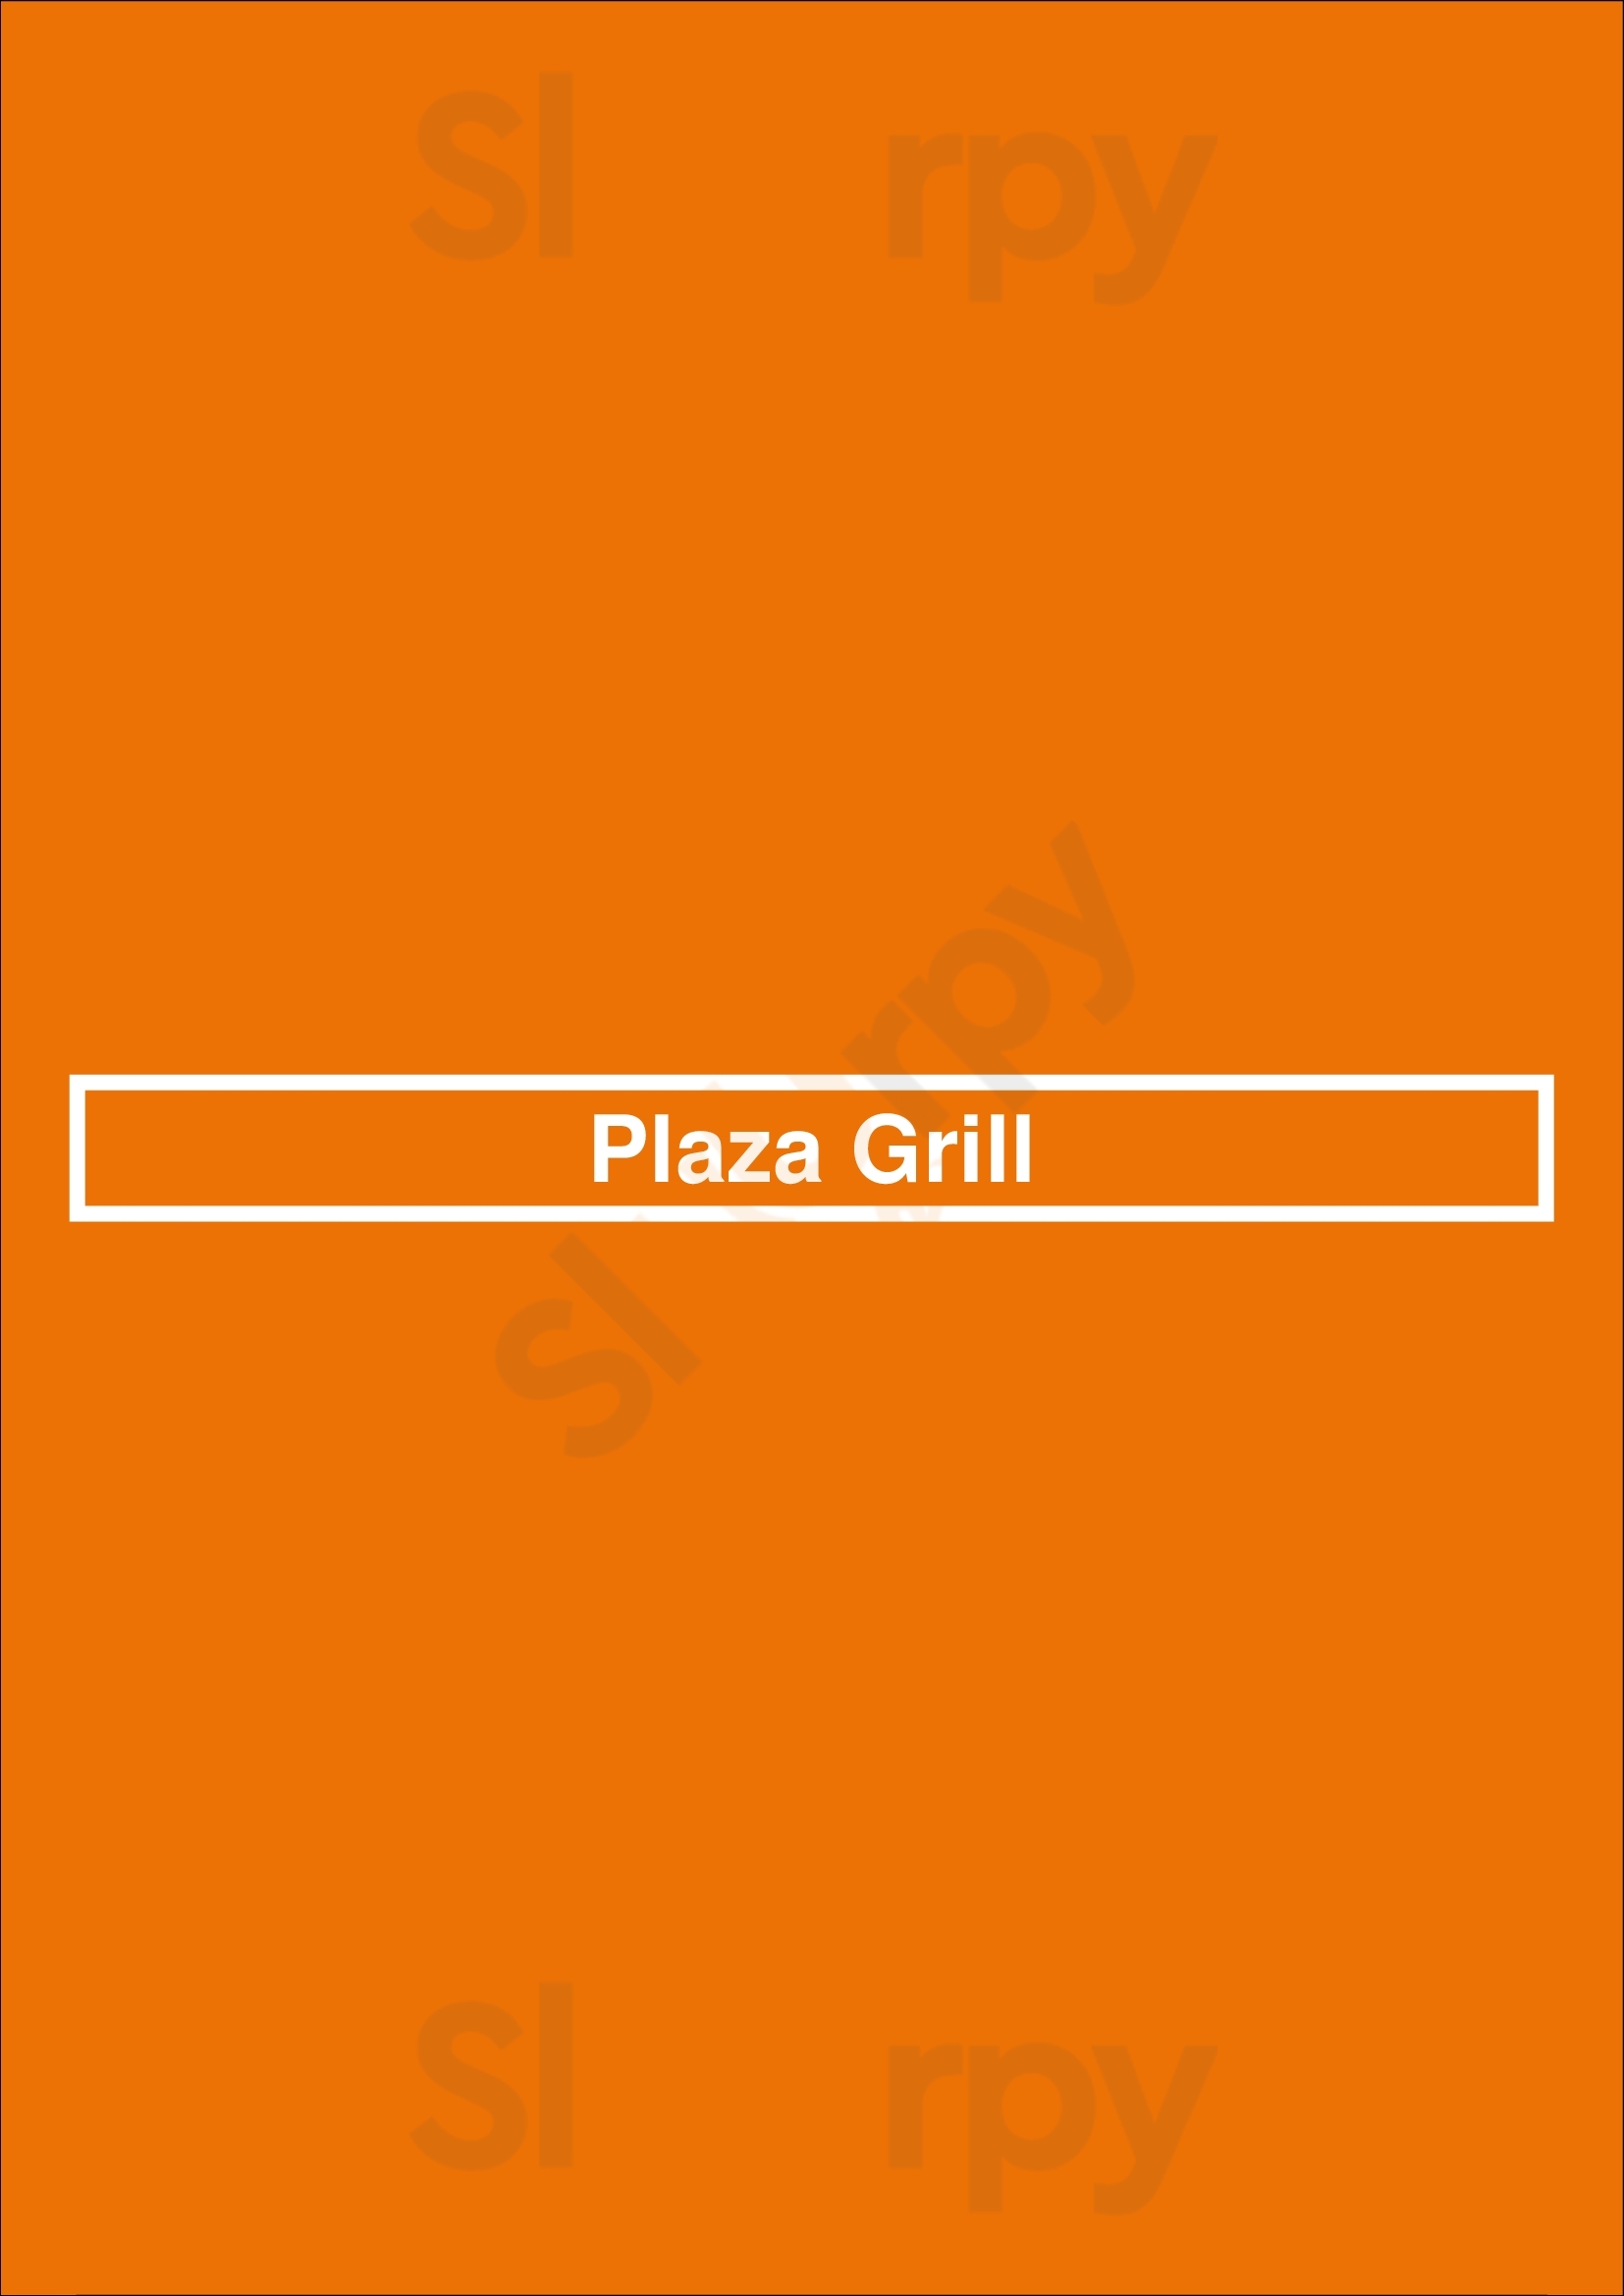 Plaza Grill Penafiel Menu - 1